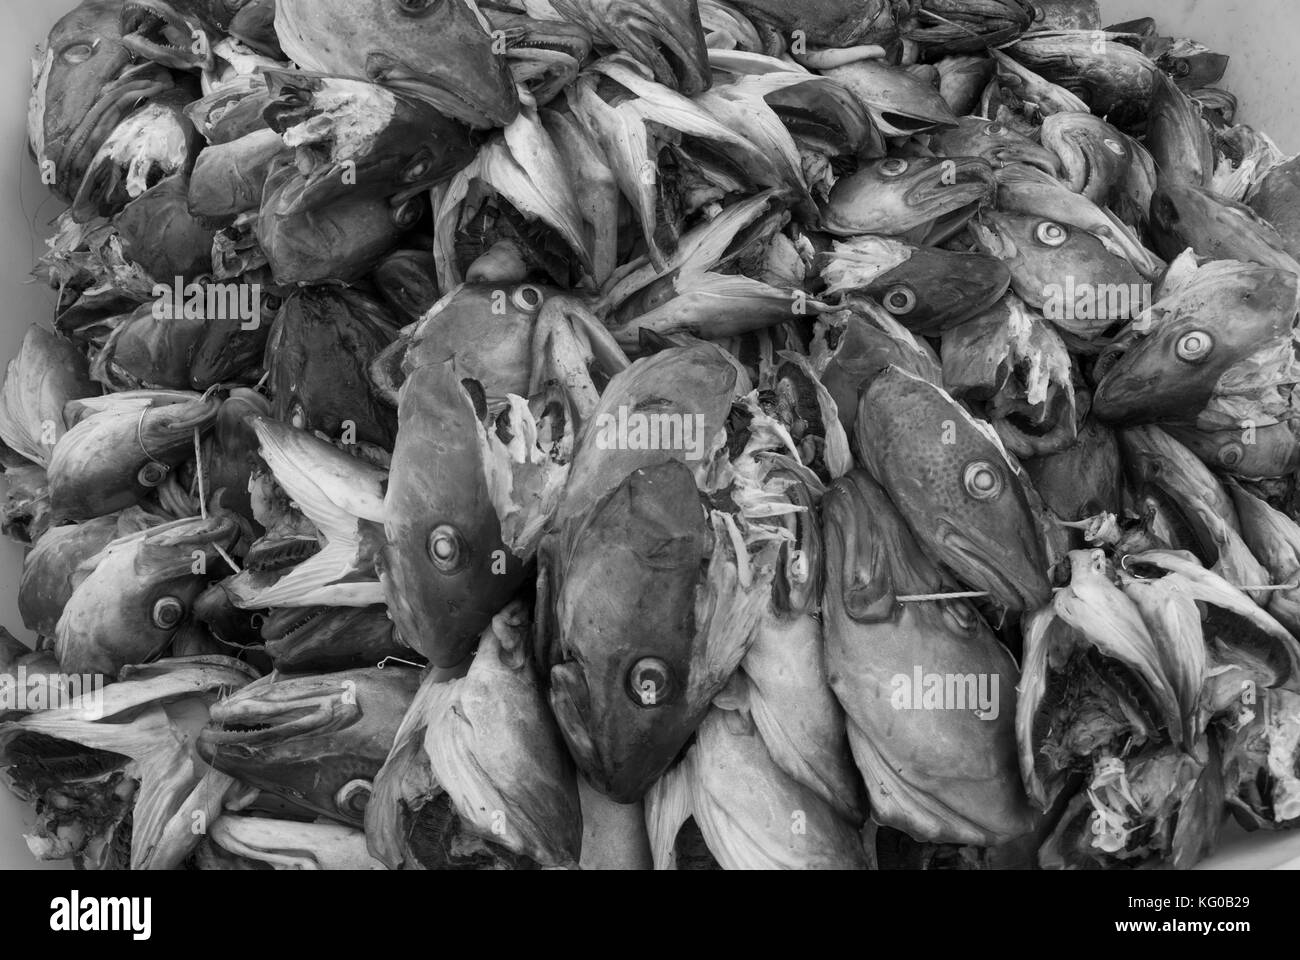 Gran parte del peso de un bacalao está en la cabeza y todas las cabezas se exportan a África, donde la demanda es grande Foto de stock